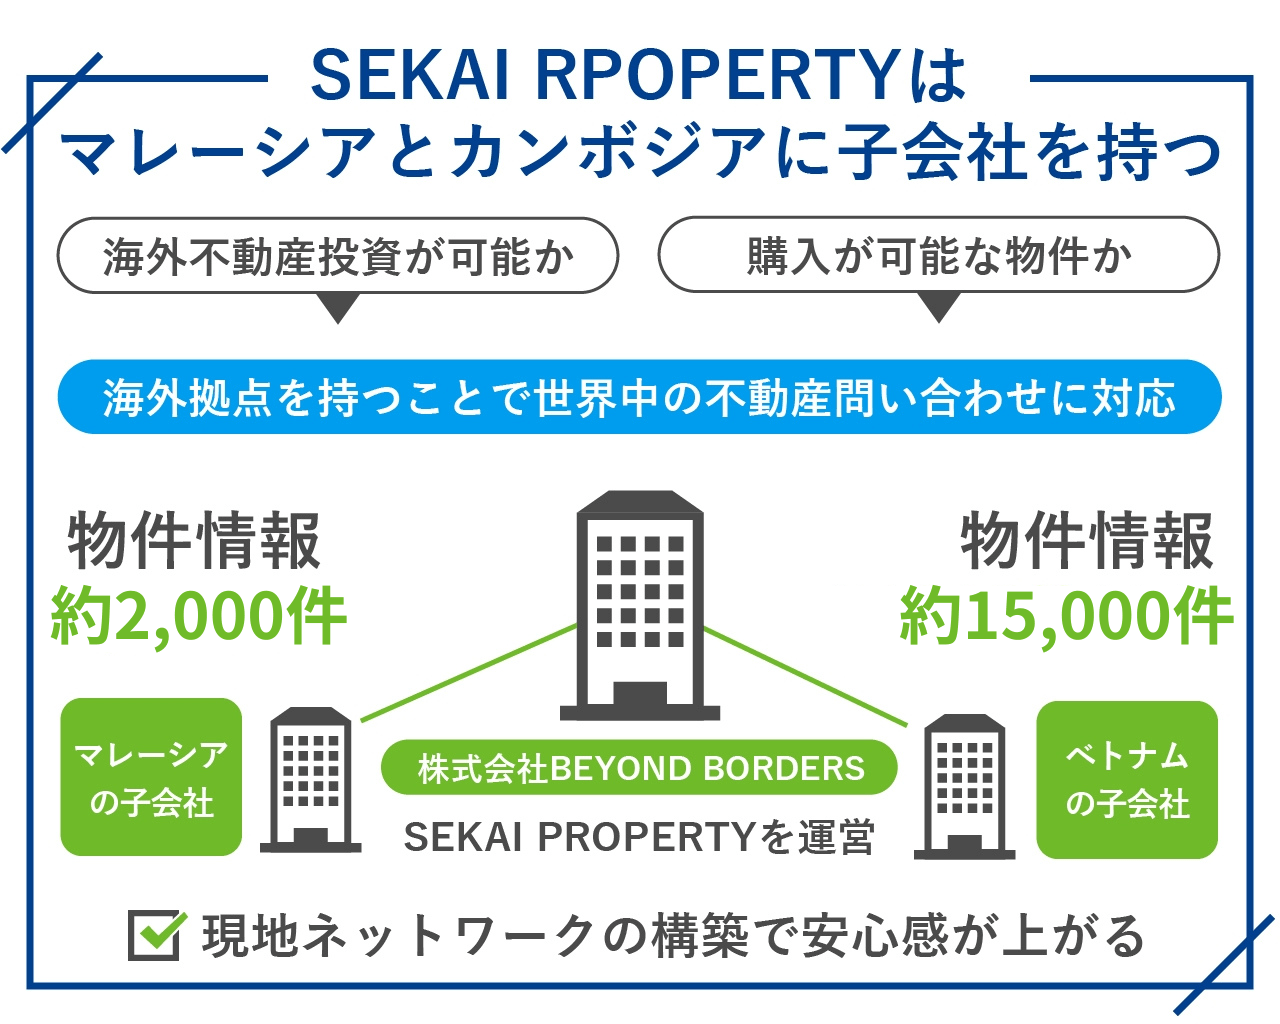 SEKAI RPOPERTYはマレーシアとカンボジアに子会社を持つ